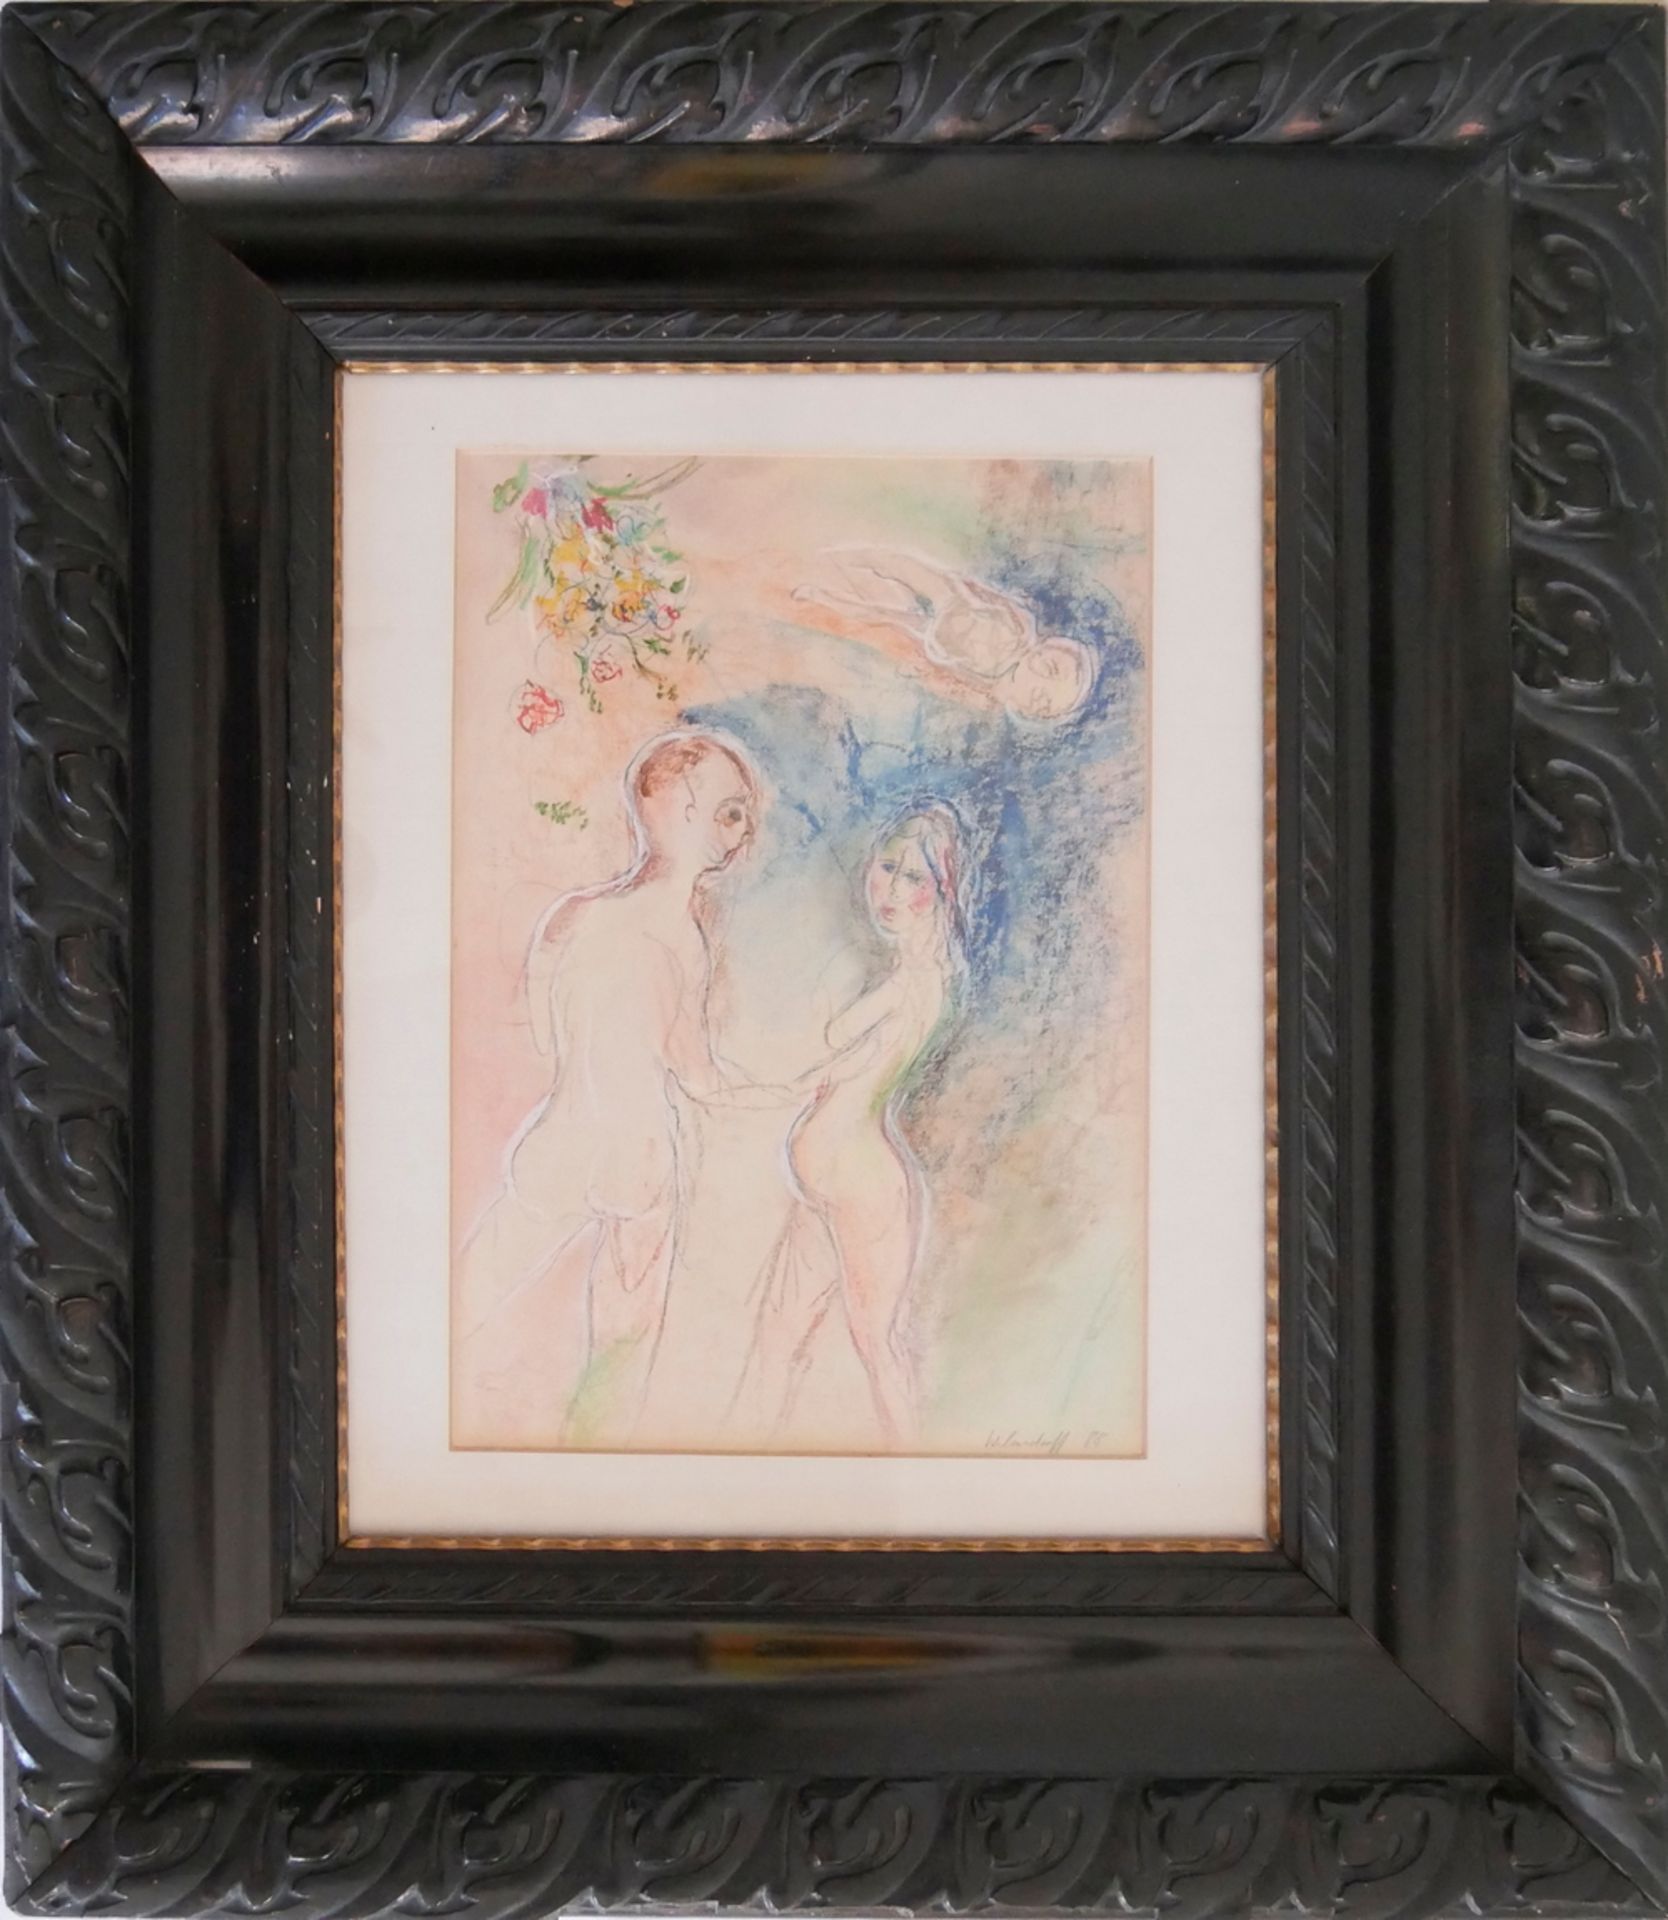 Farb-Zeichnung "Die Liebenden", nach Chagall-Art, Signatur unten rechts Wilmsdorff 88, hinter Glas